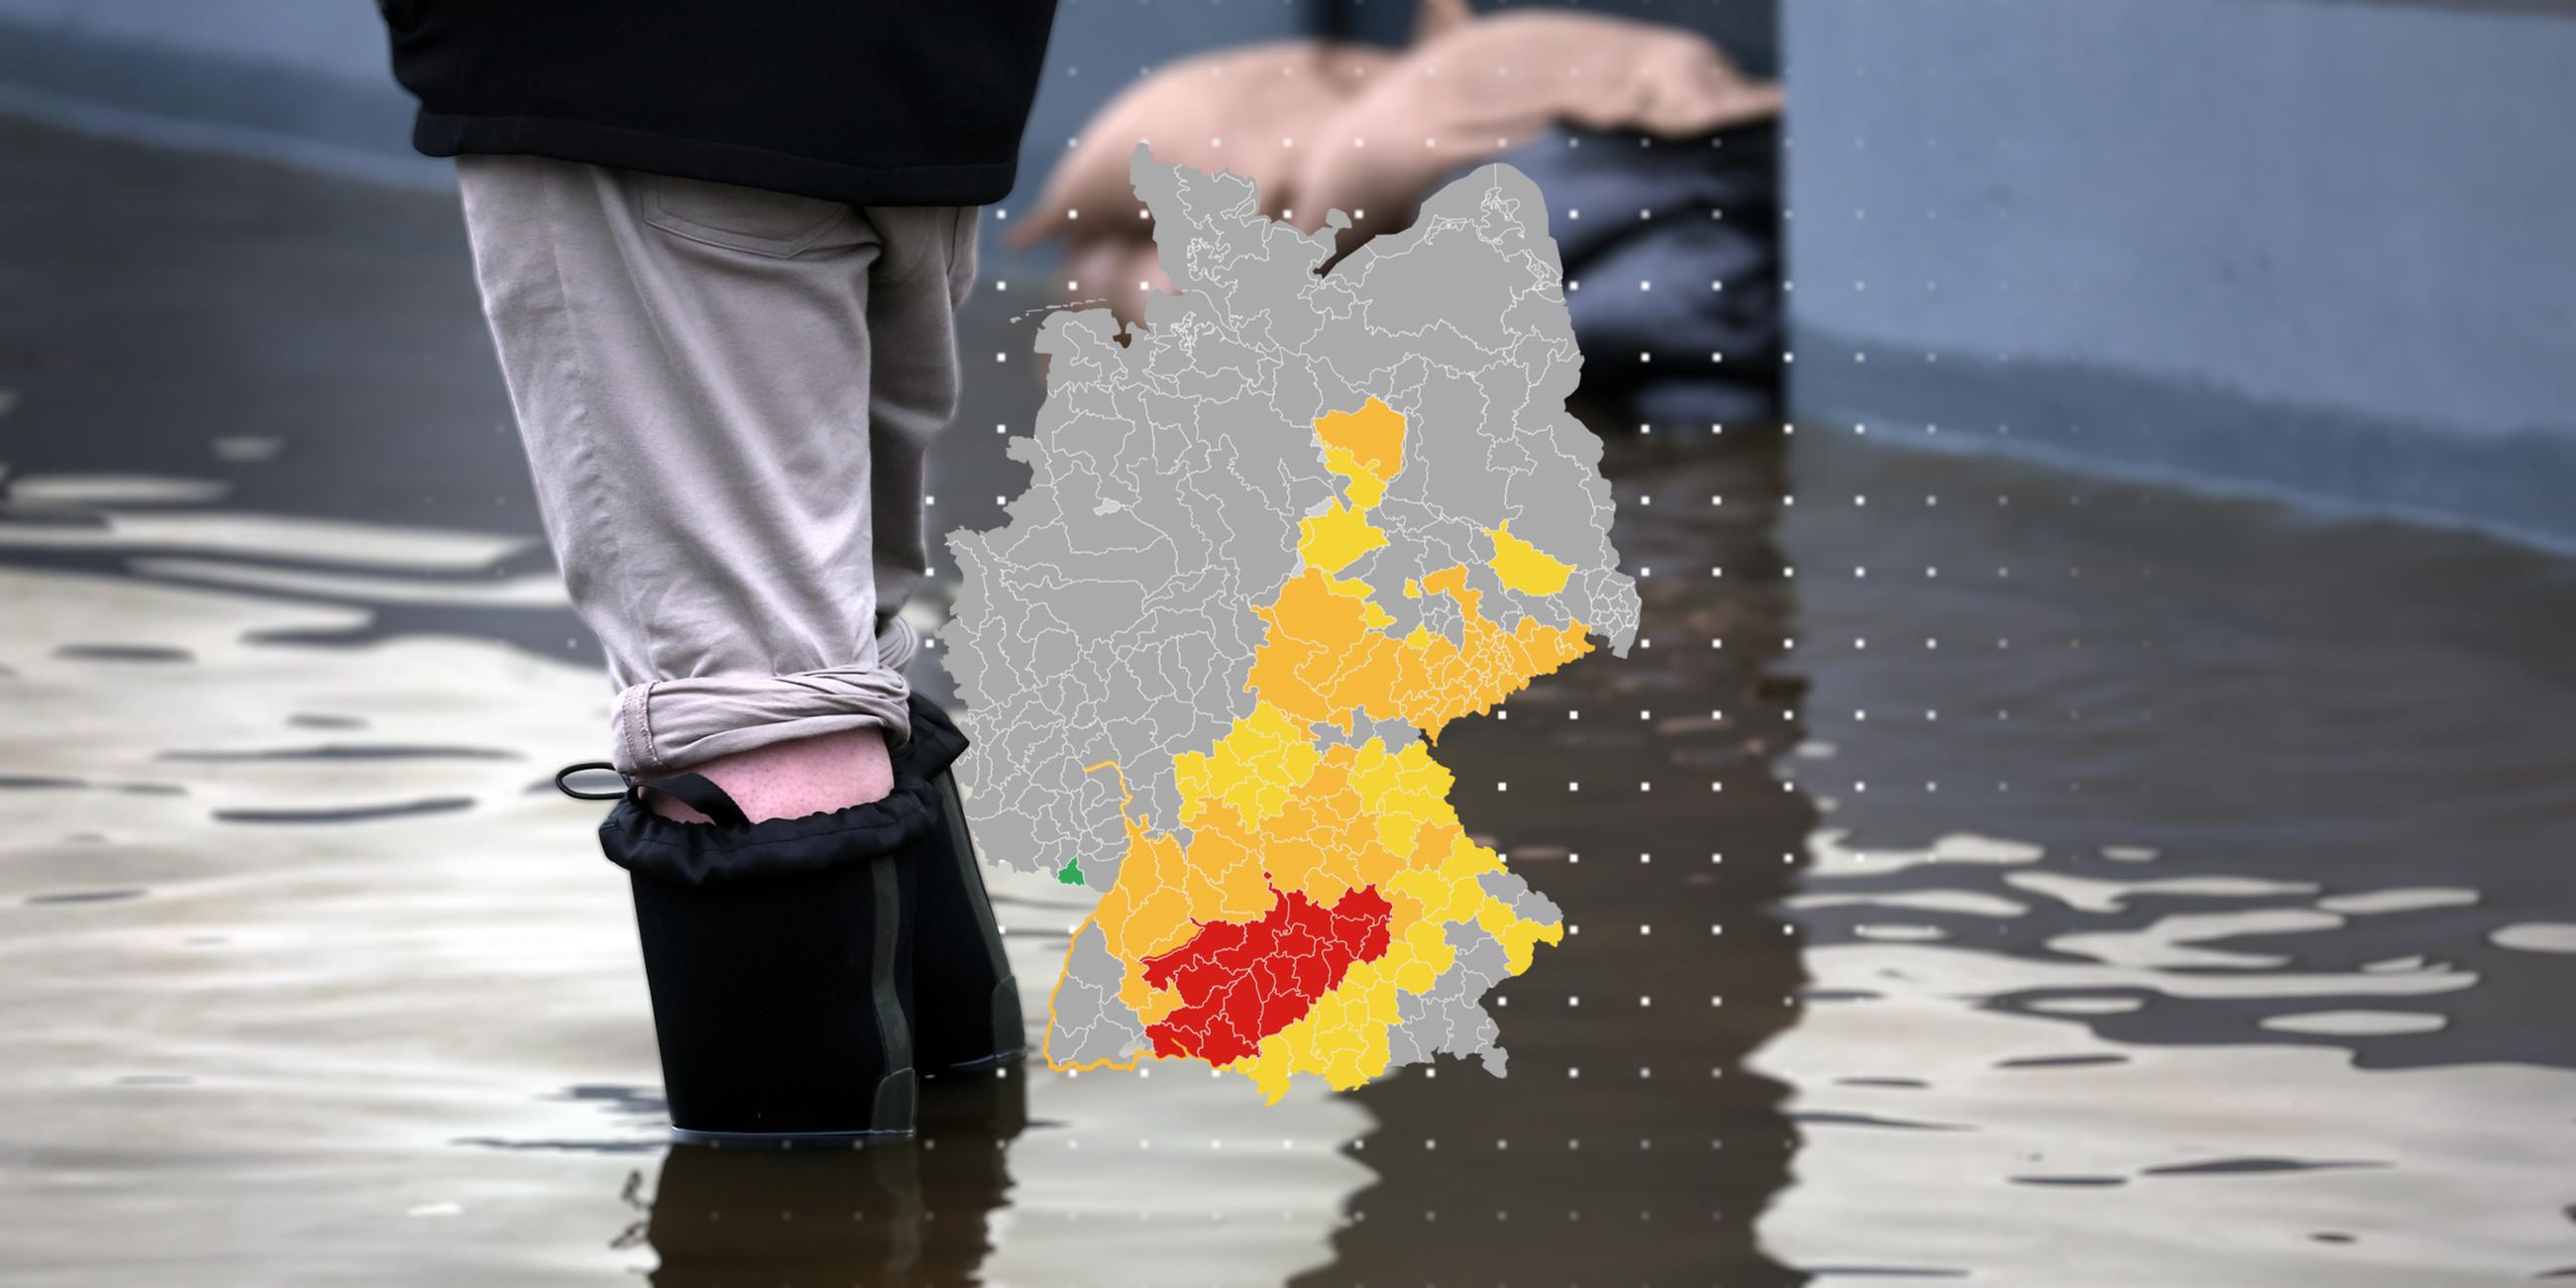 Die Montage zeigt eine Deutschland-Karte, auf der verschiedene Hochwasser-Warnstufen zu sehen sind. Im Hintergrund sind Sandsäcke und die Beine einer Person in Gummistiefeln zu sehen, Wasser steht ihr bis zu den Waden.